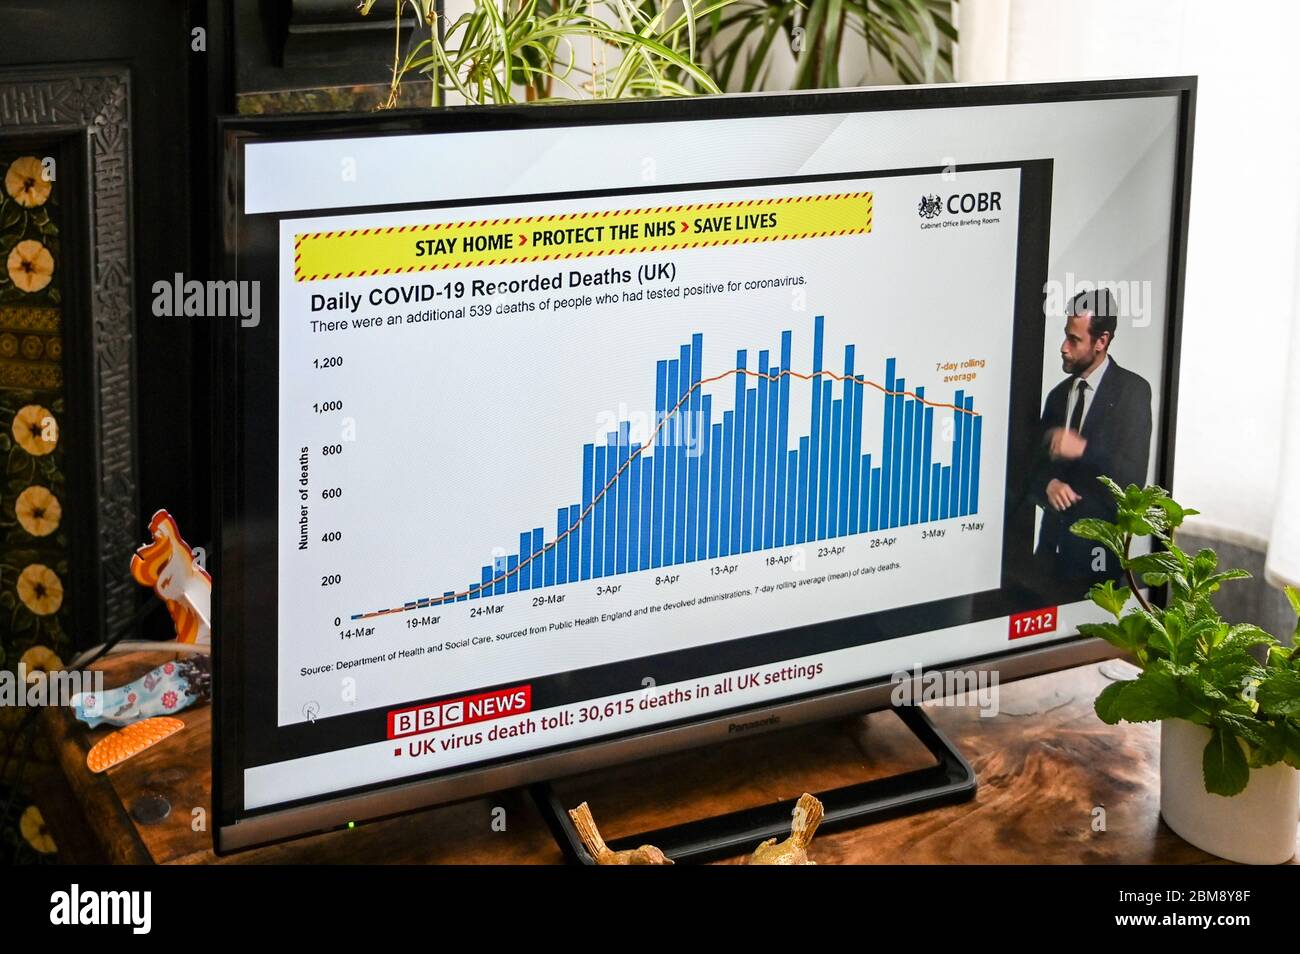 Le briefing quotidien télévisé du coronavirus Downing Street avec un graphique décrivant le taux de mortalité au Royaume-Uni. Banque D'Images